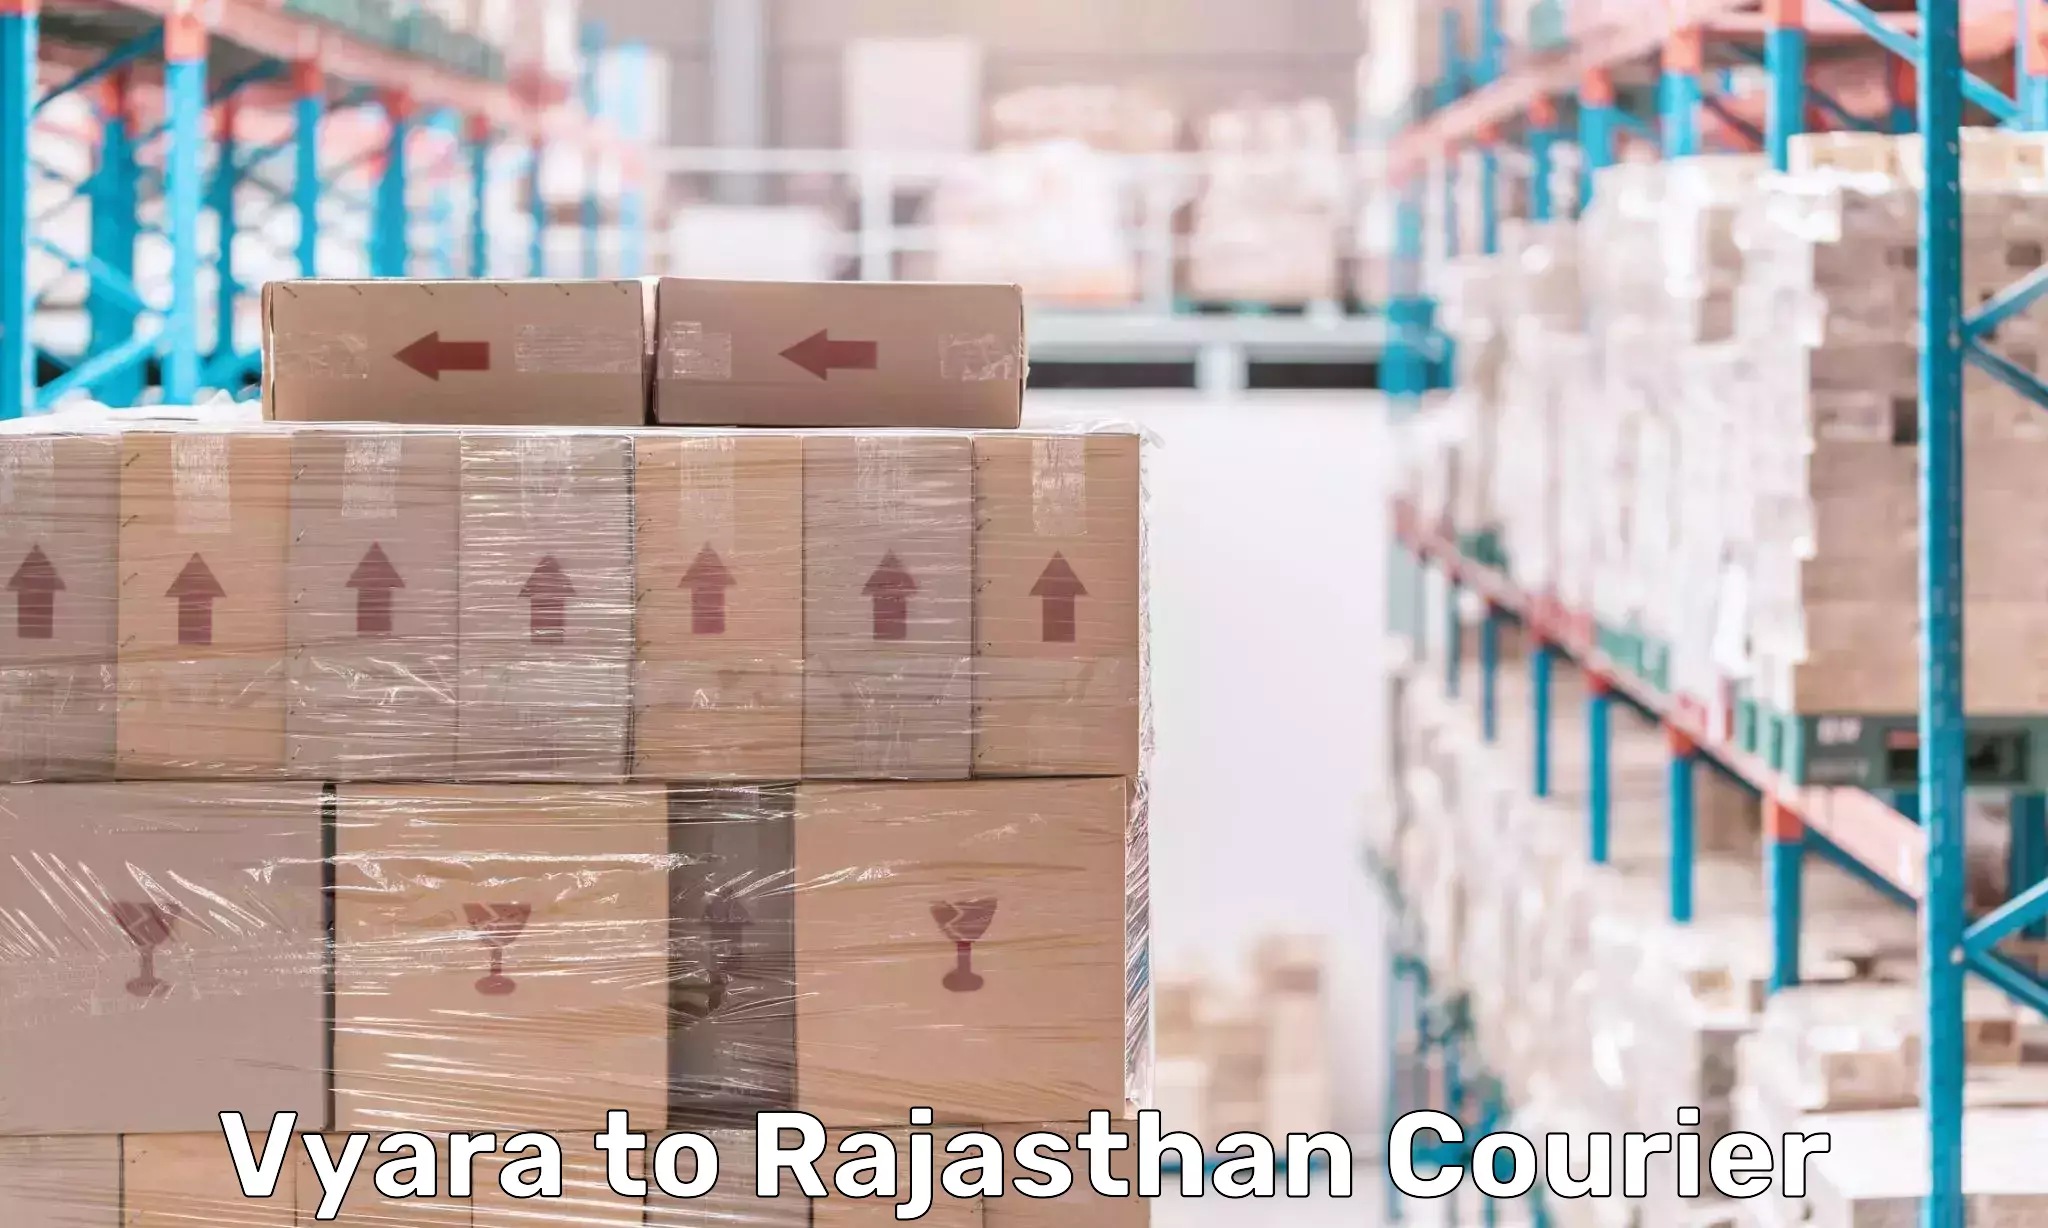 Digital shipping tools Vyara to Rajasthan